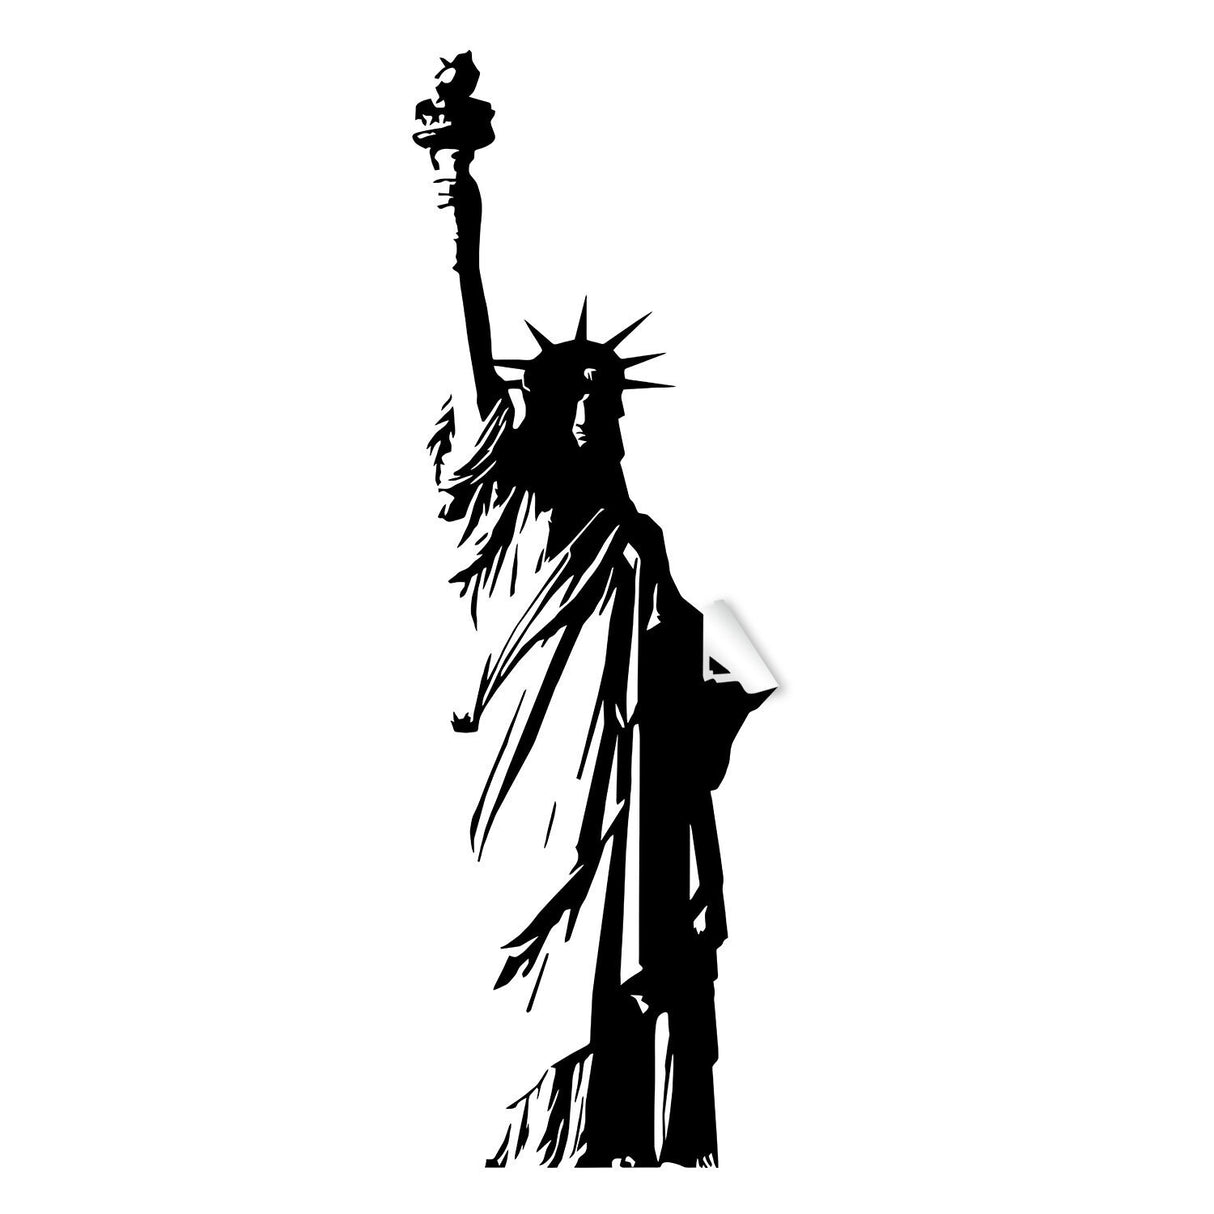 Statue Of Liberty Sticker - NY Usa Lady Art Decal